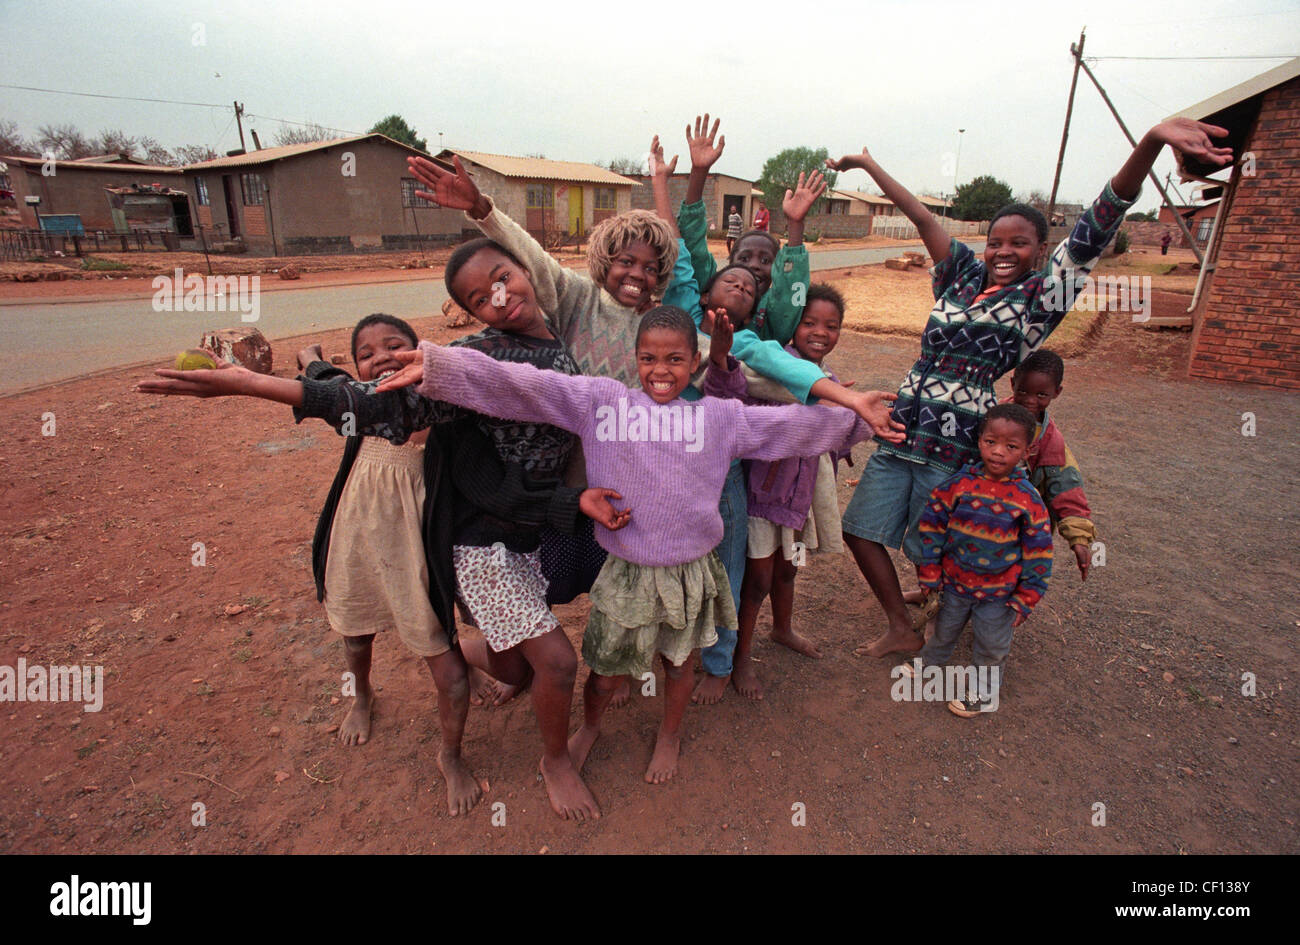 A piedi nudi Township kids, uno che indossa una Marilyn Monroe parrucca e  dare un caloroso benvenuto a Soweto, in Sud Africa nel 1996 Foto stock -  Alamy